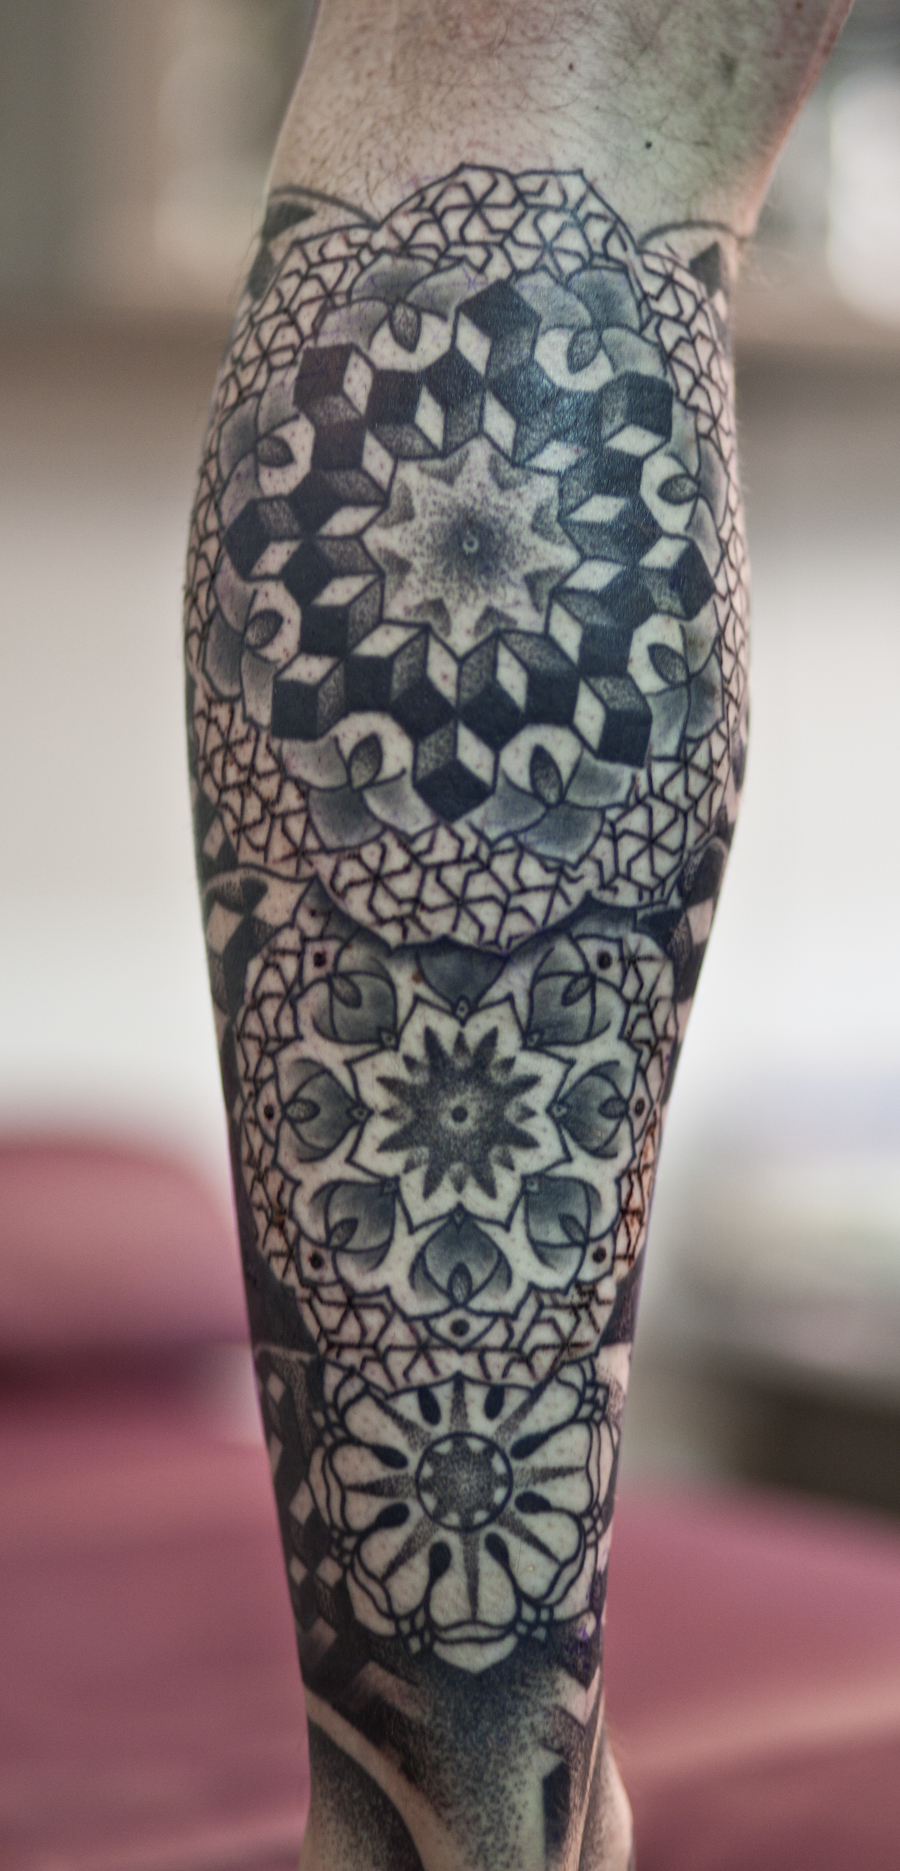 geometric-tattoo-2015